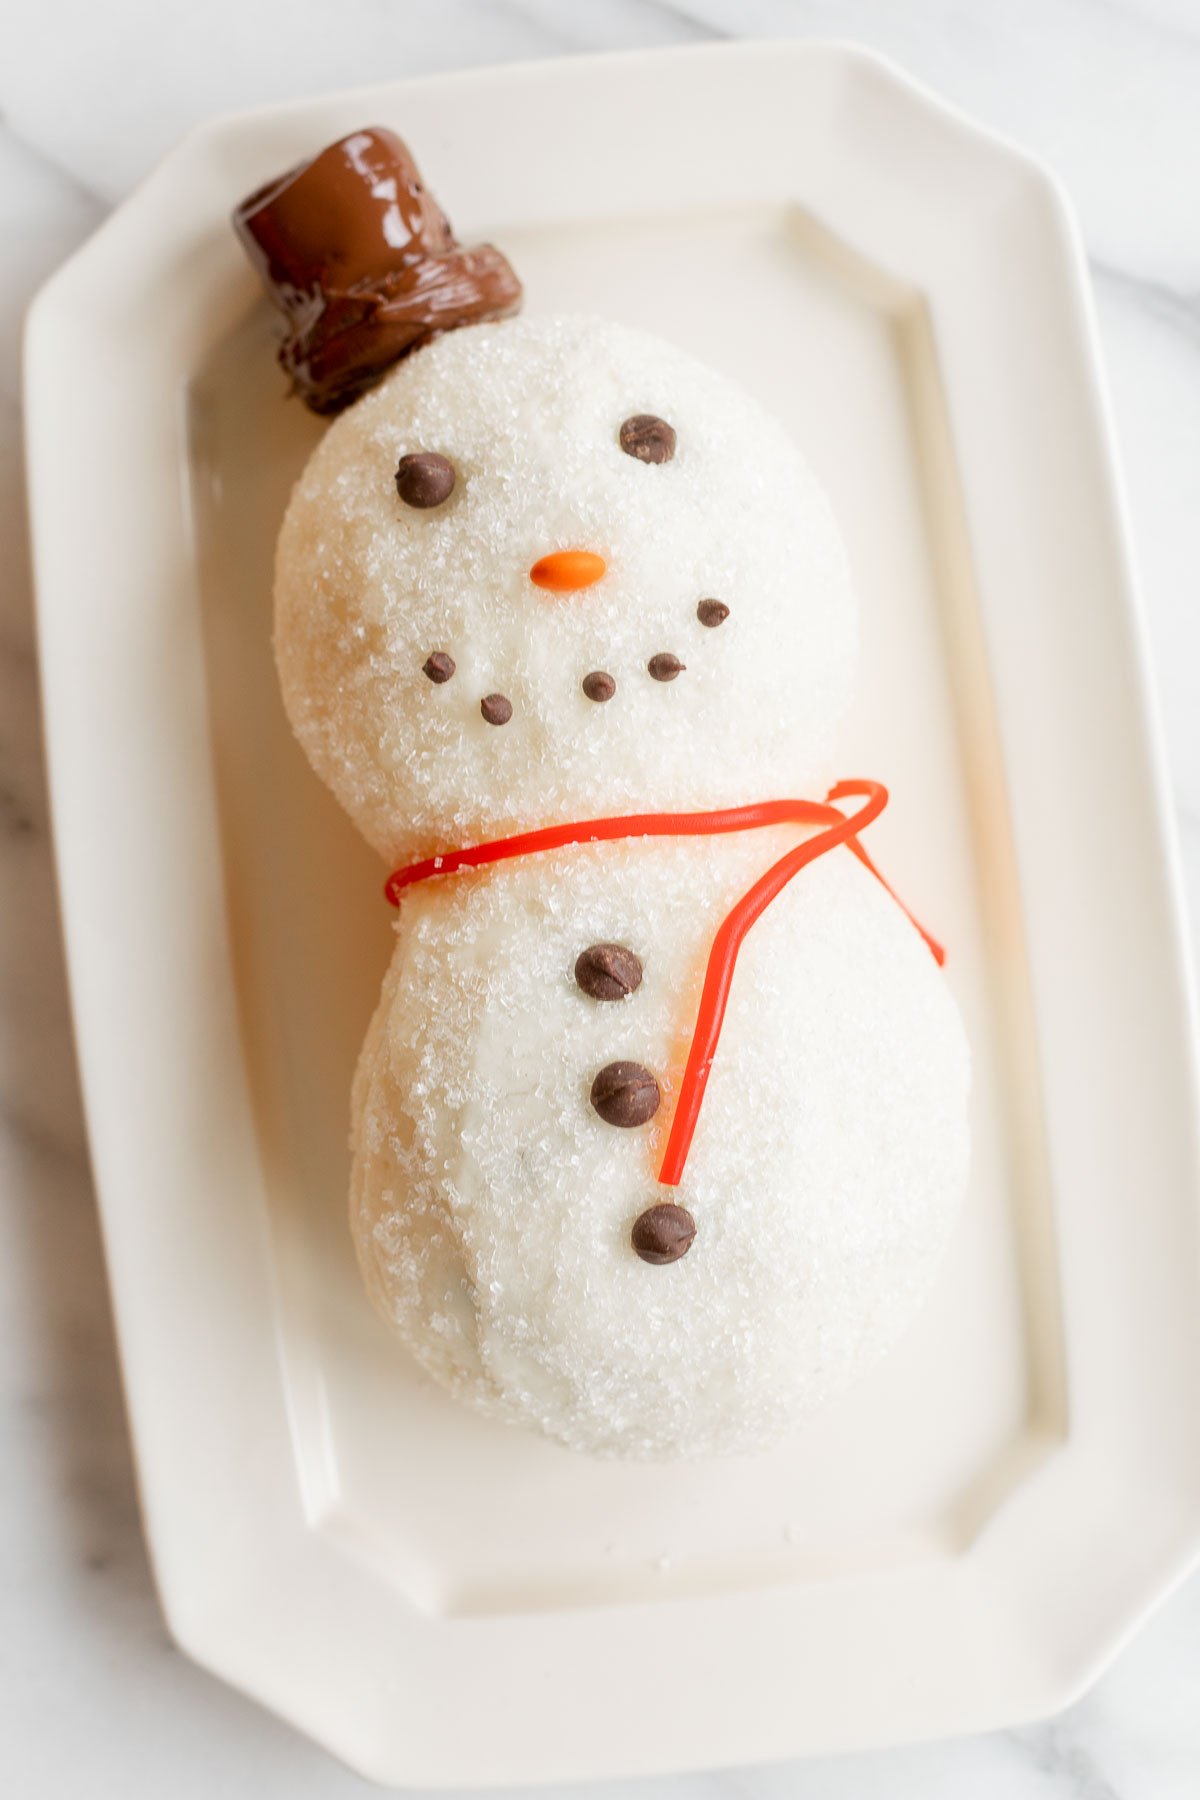 A cheesy snowman shaped doughnut on a plate.